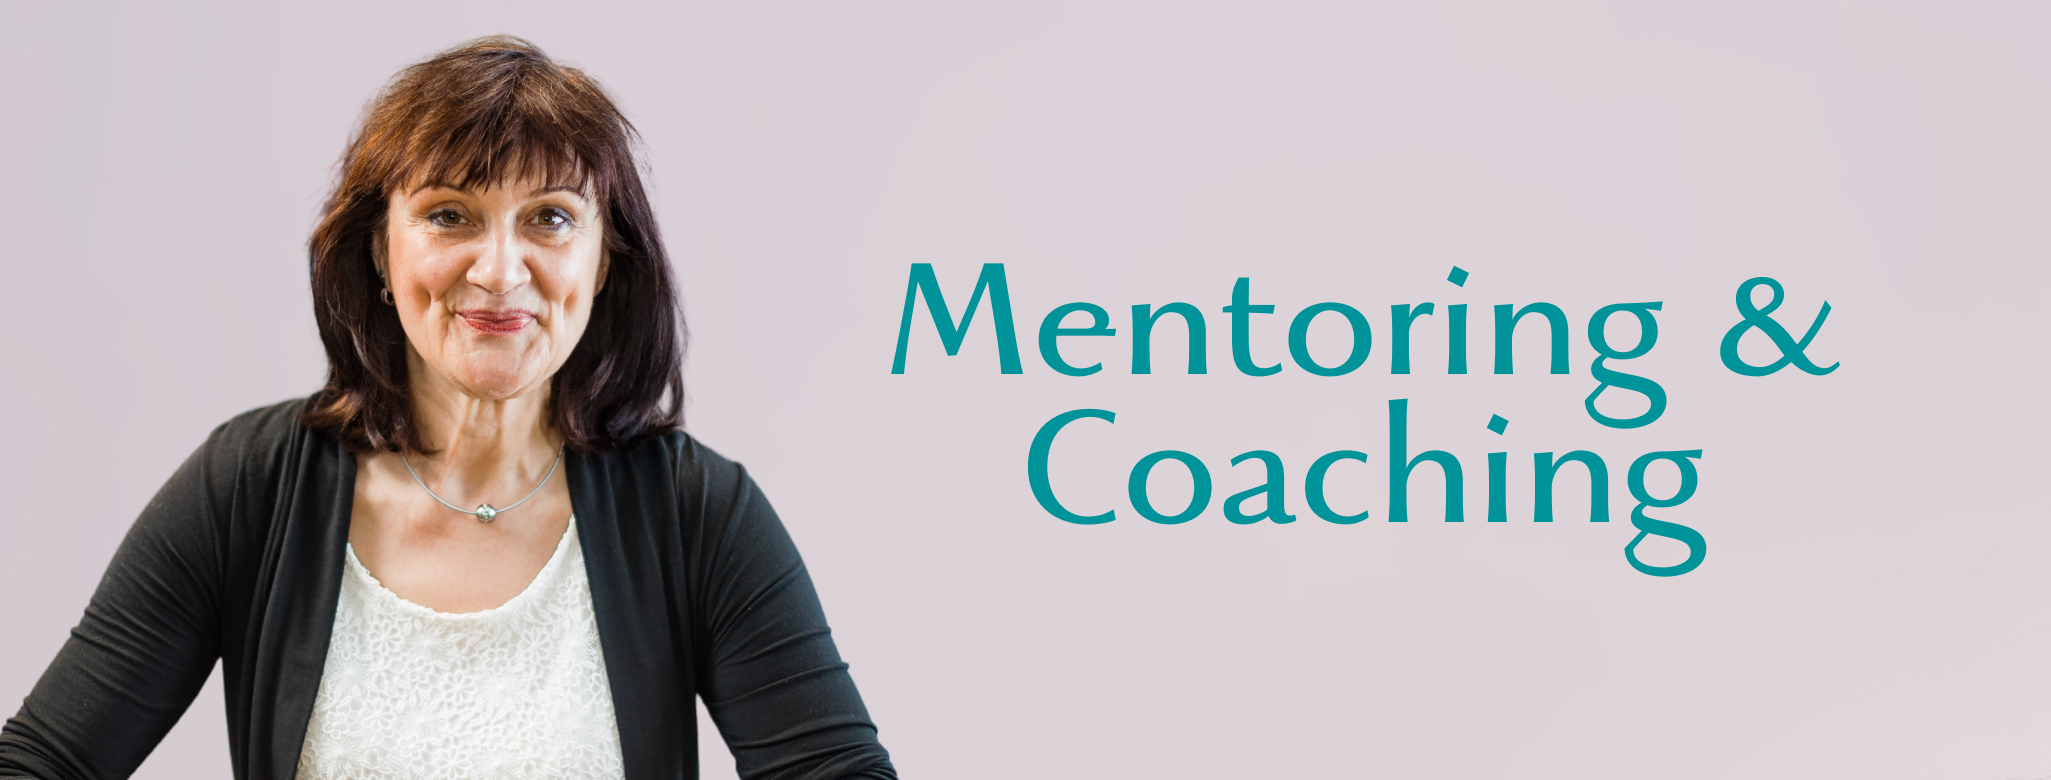 Header Sabine Winter Mentoring & Coaching